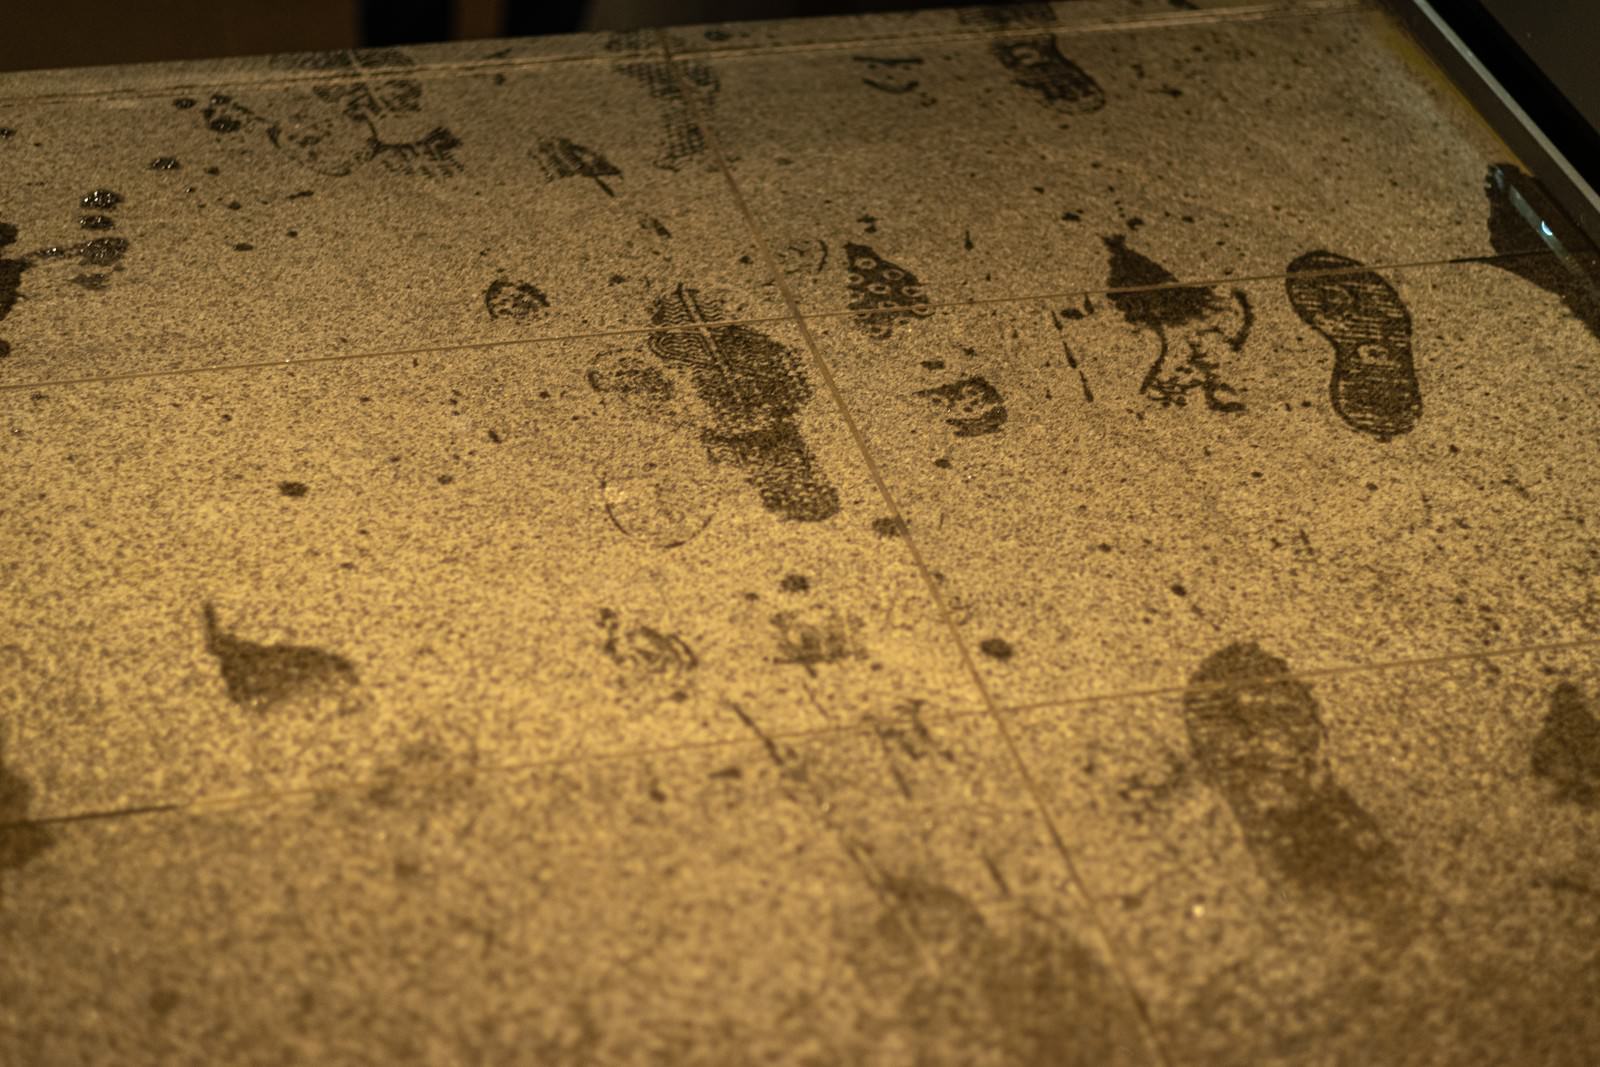 「床に付いた濡れた靴跡」の写真